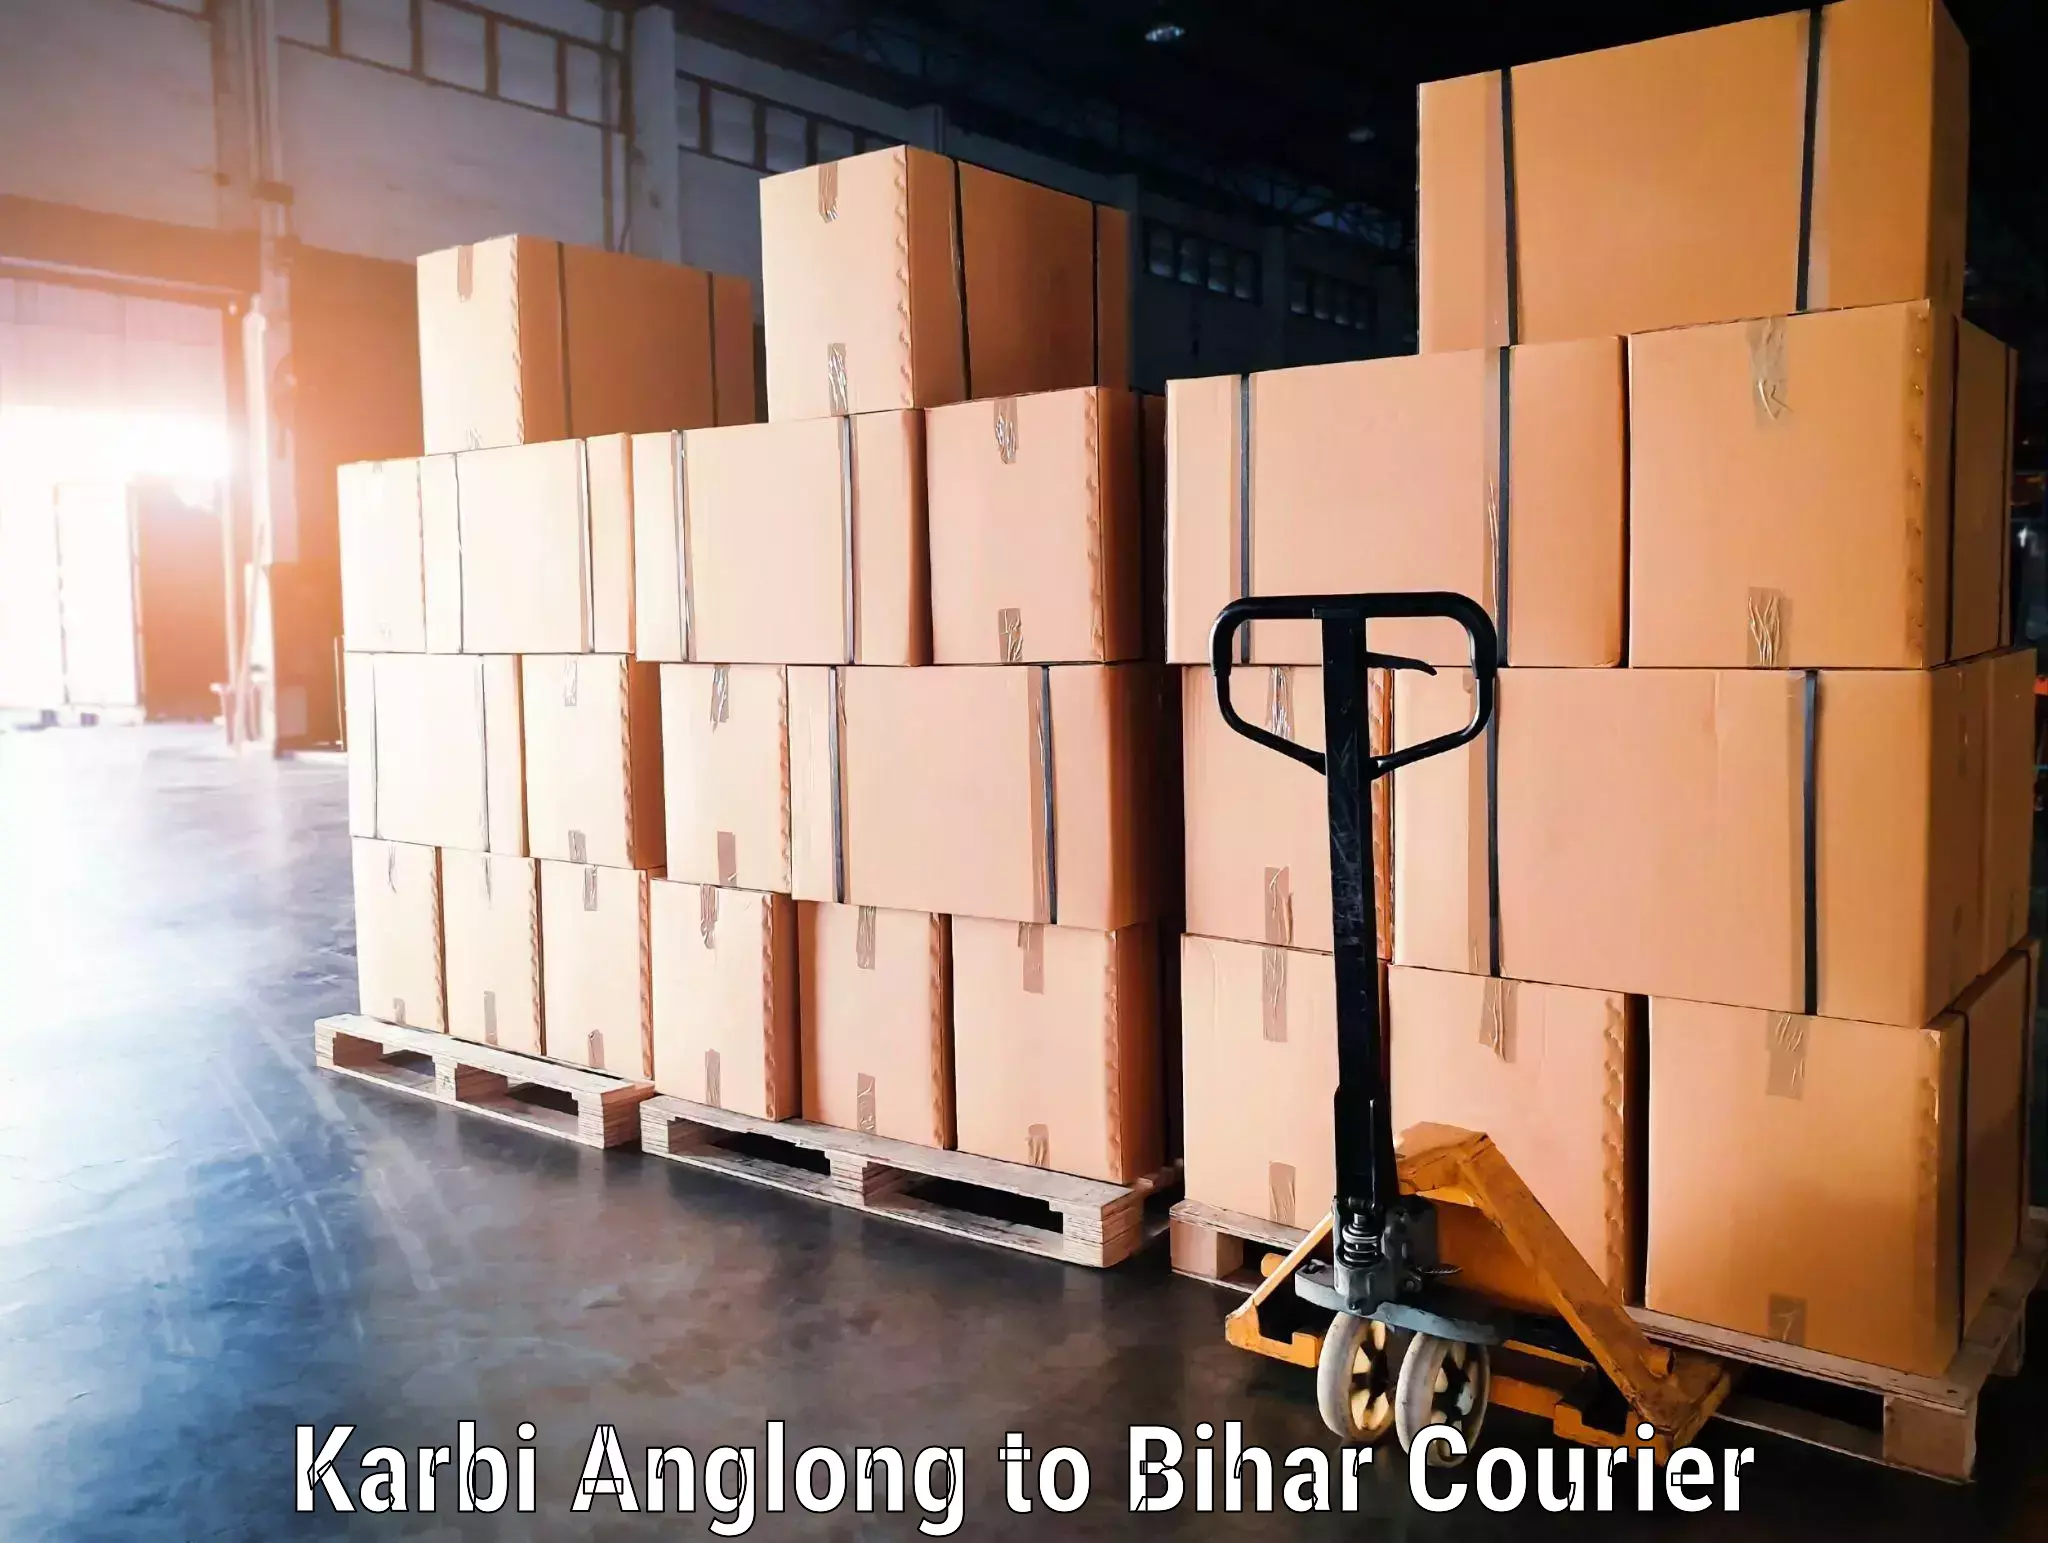 Baggage transport network Karbi Anglong to Lakhisarai